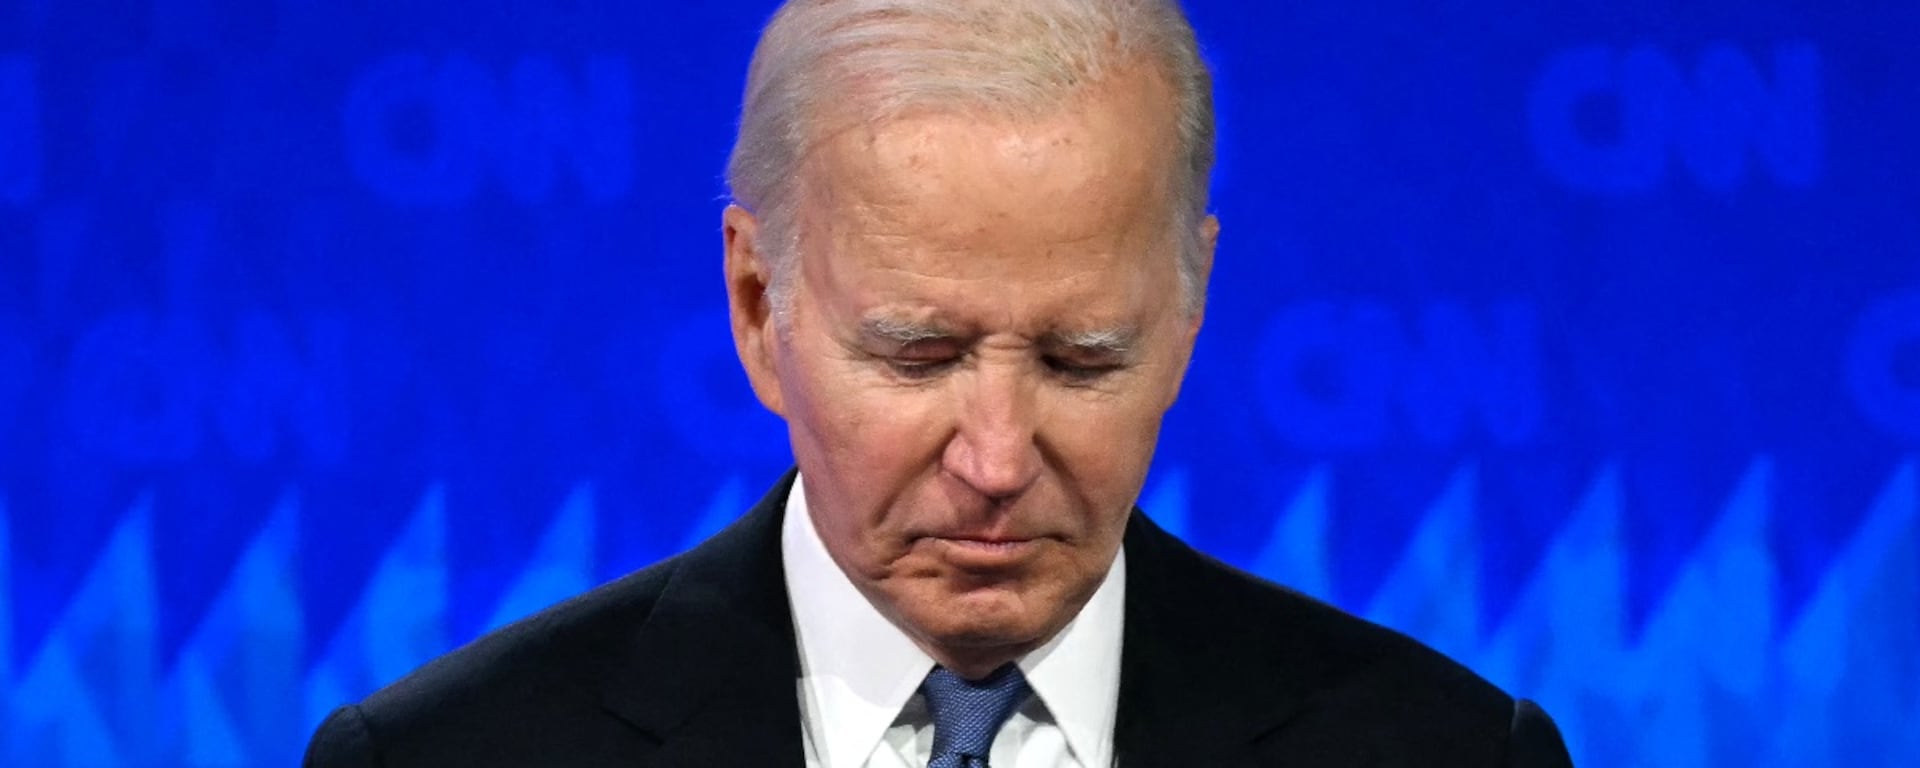 Cinco preguntas que siguen rondando sobre la candidatura de Biden tras su desastroso debate 